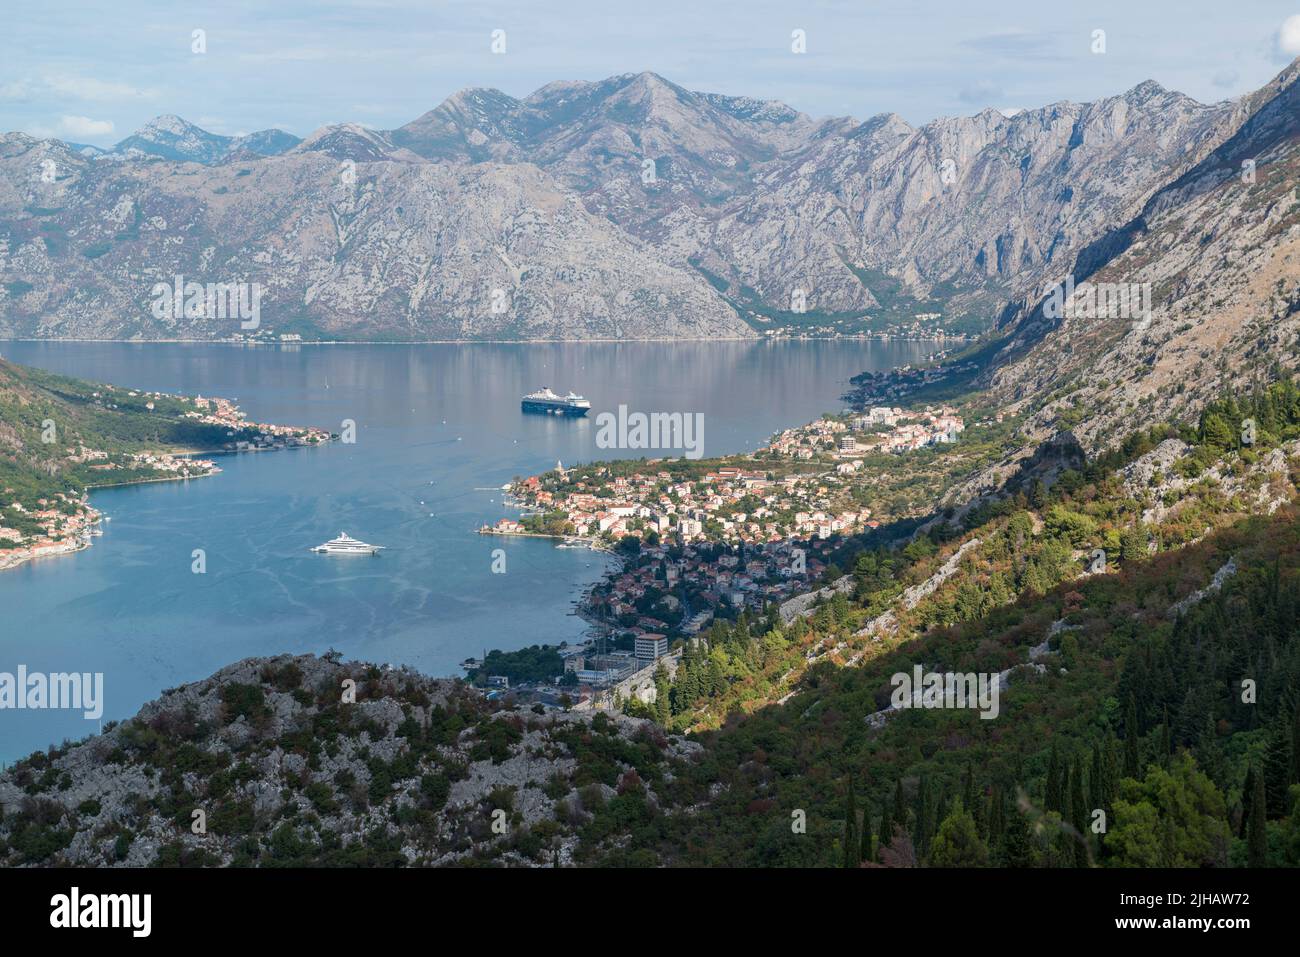 Vista panorámica de la Bahía de Kotor, vista desde la plataforma de observación. Montenegro. Foto de stock